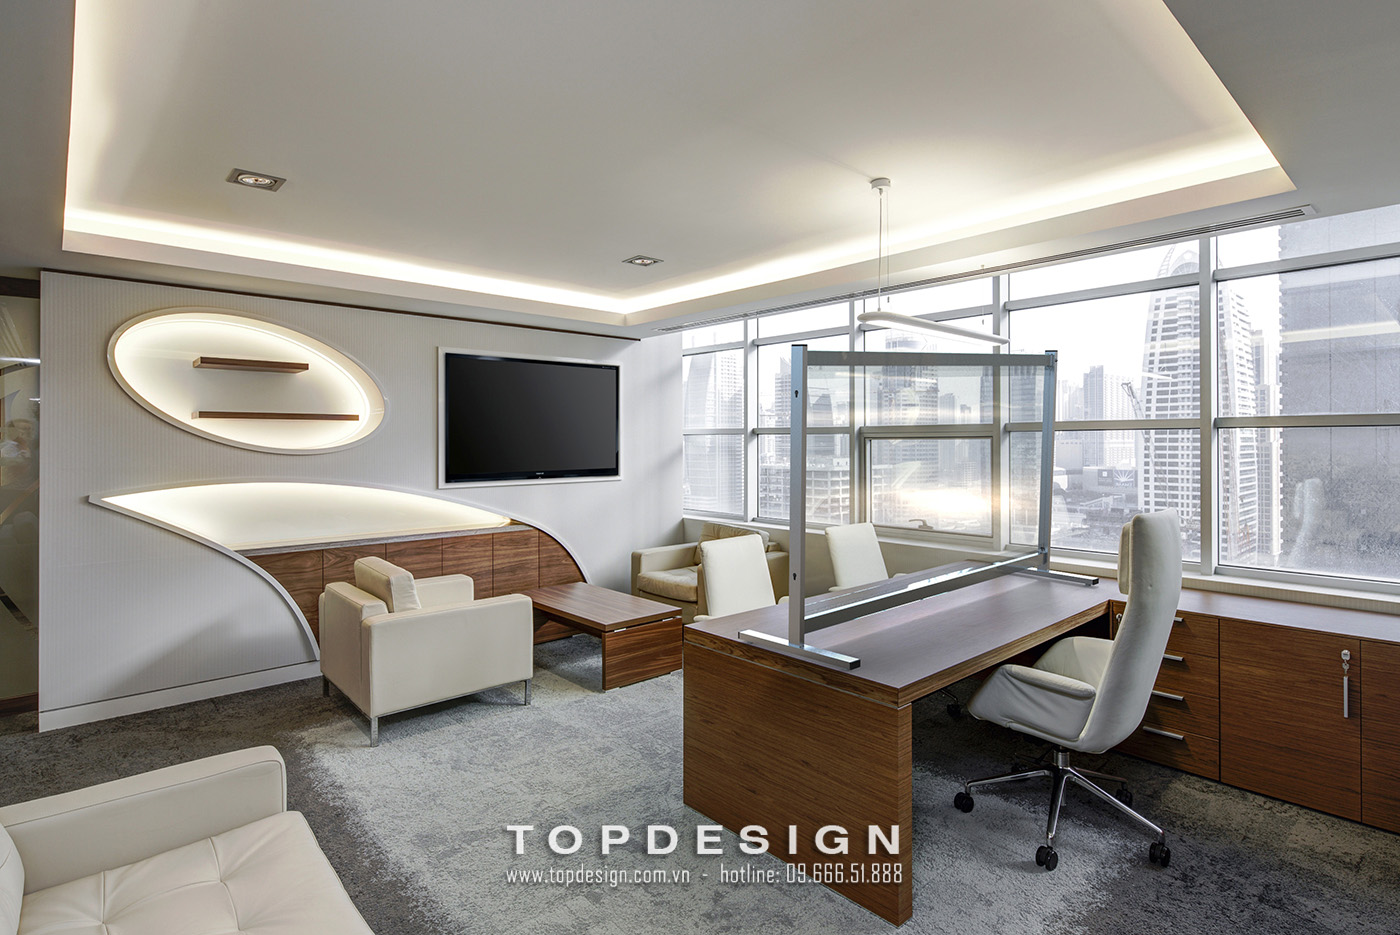 9.Mẫu thiết kế hệ thống ánh sáng văn phòng đạt chuẩn tiêu chuẩn, tinh tế_TOPDESIGN